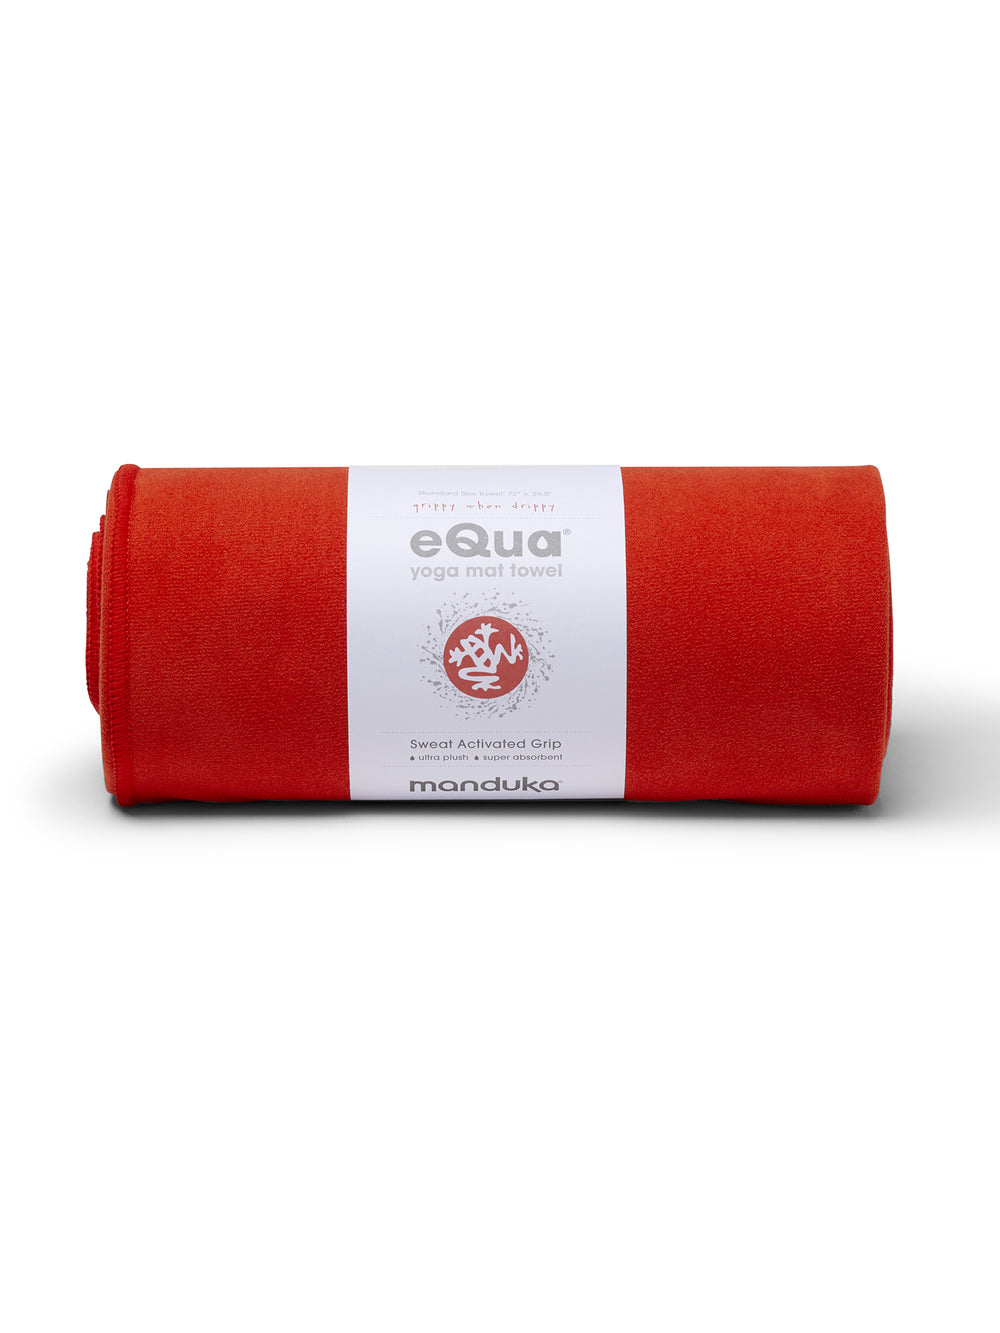 [SALE10%OFF][15%OFF][Manduka] eQua Yoga Mat Towel (L) Yoga Rug / EQUA YOGA MAT TOWEL Manduka Yoga Goods Non-Slip Large Size 23SS [A] 60_1